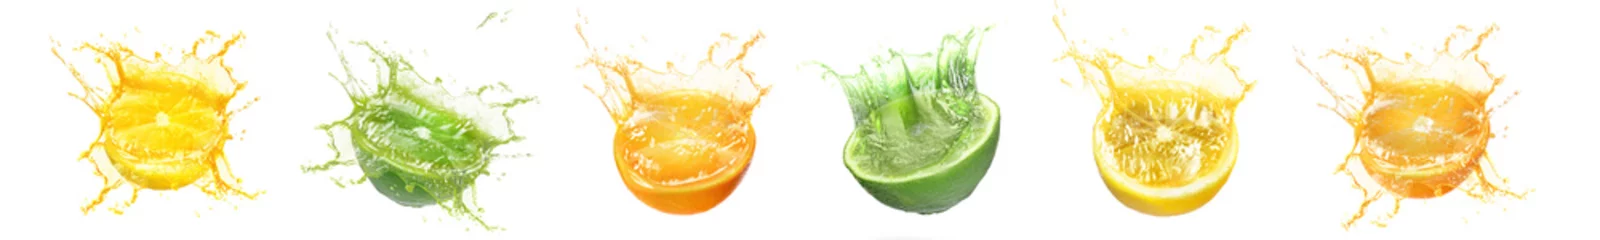 Gordijnen Fresh citrus fruits with splashing juice on white background, set © New Africa